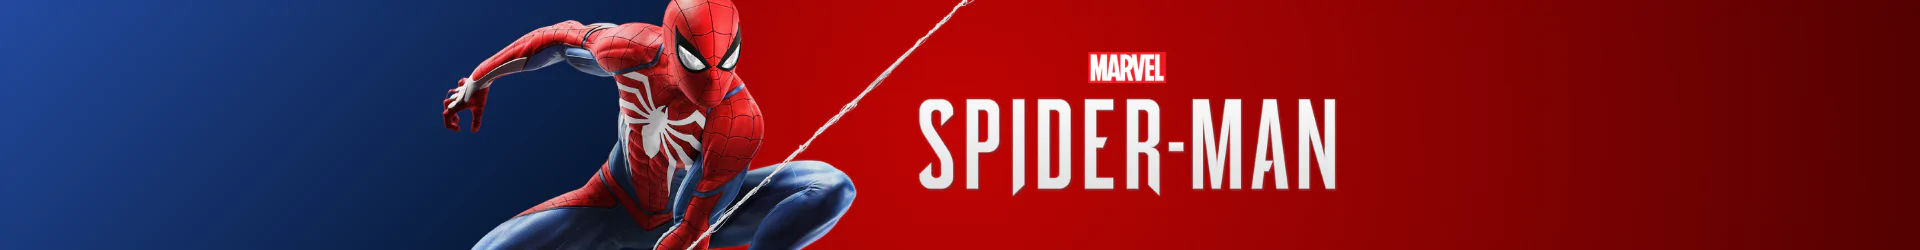 Spider-Man puzzles banner